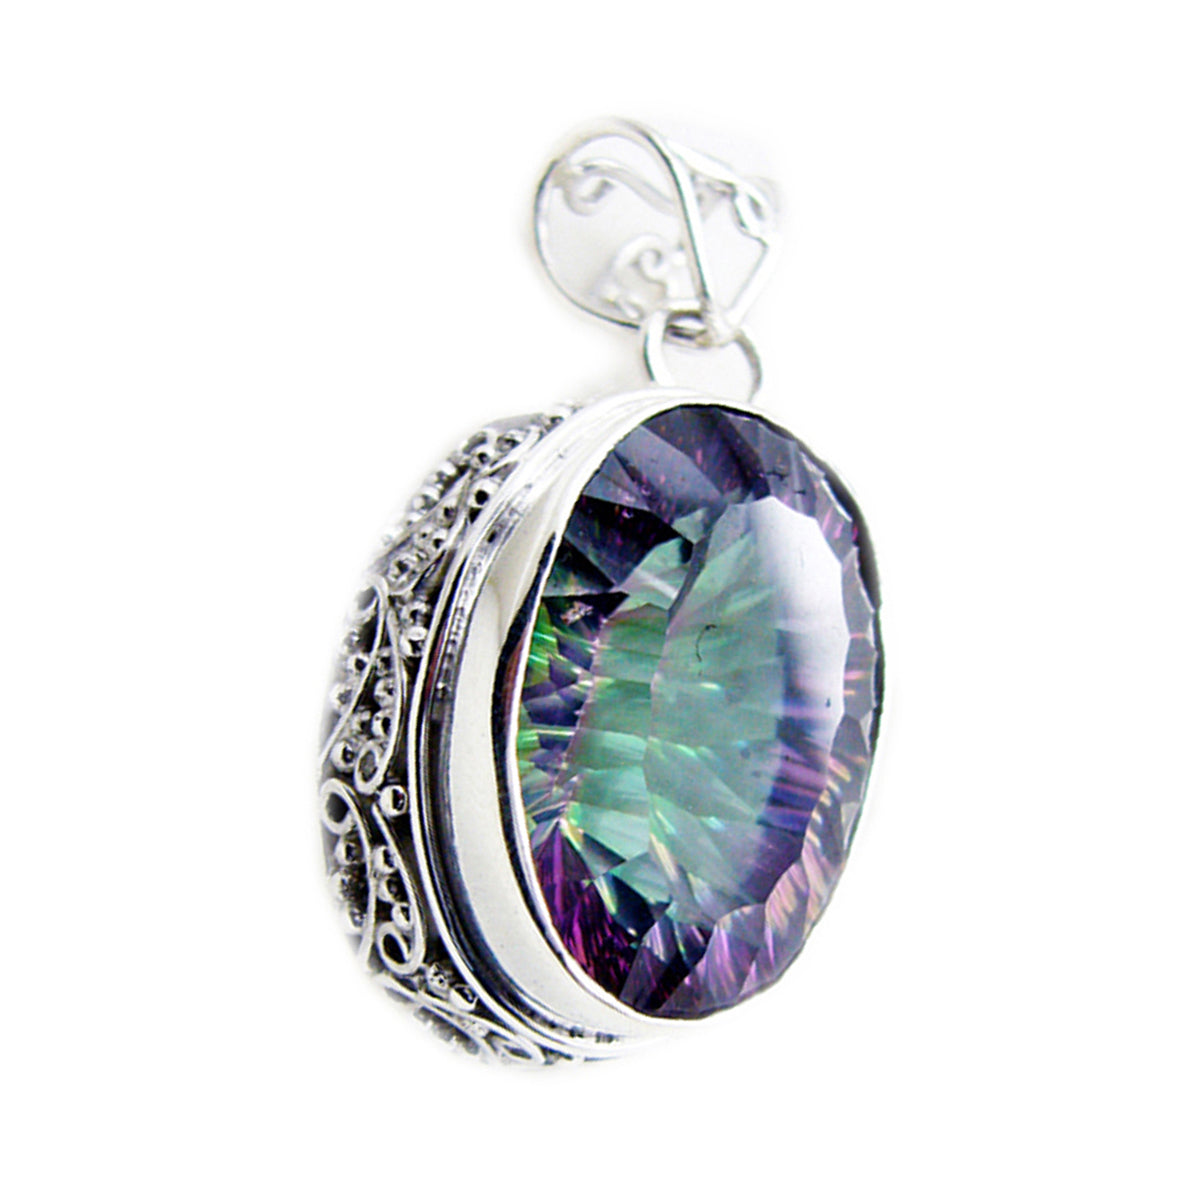 riyo gemme decorative ciondolo ovale sfaccettato multicolore quarzo mistico in argento massiccio regalo per matrimonio